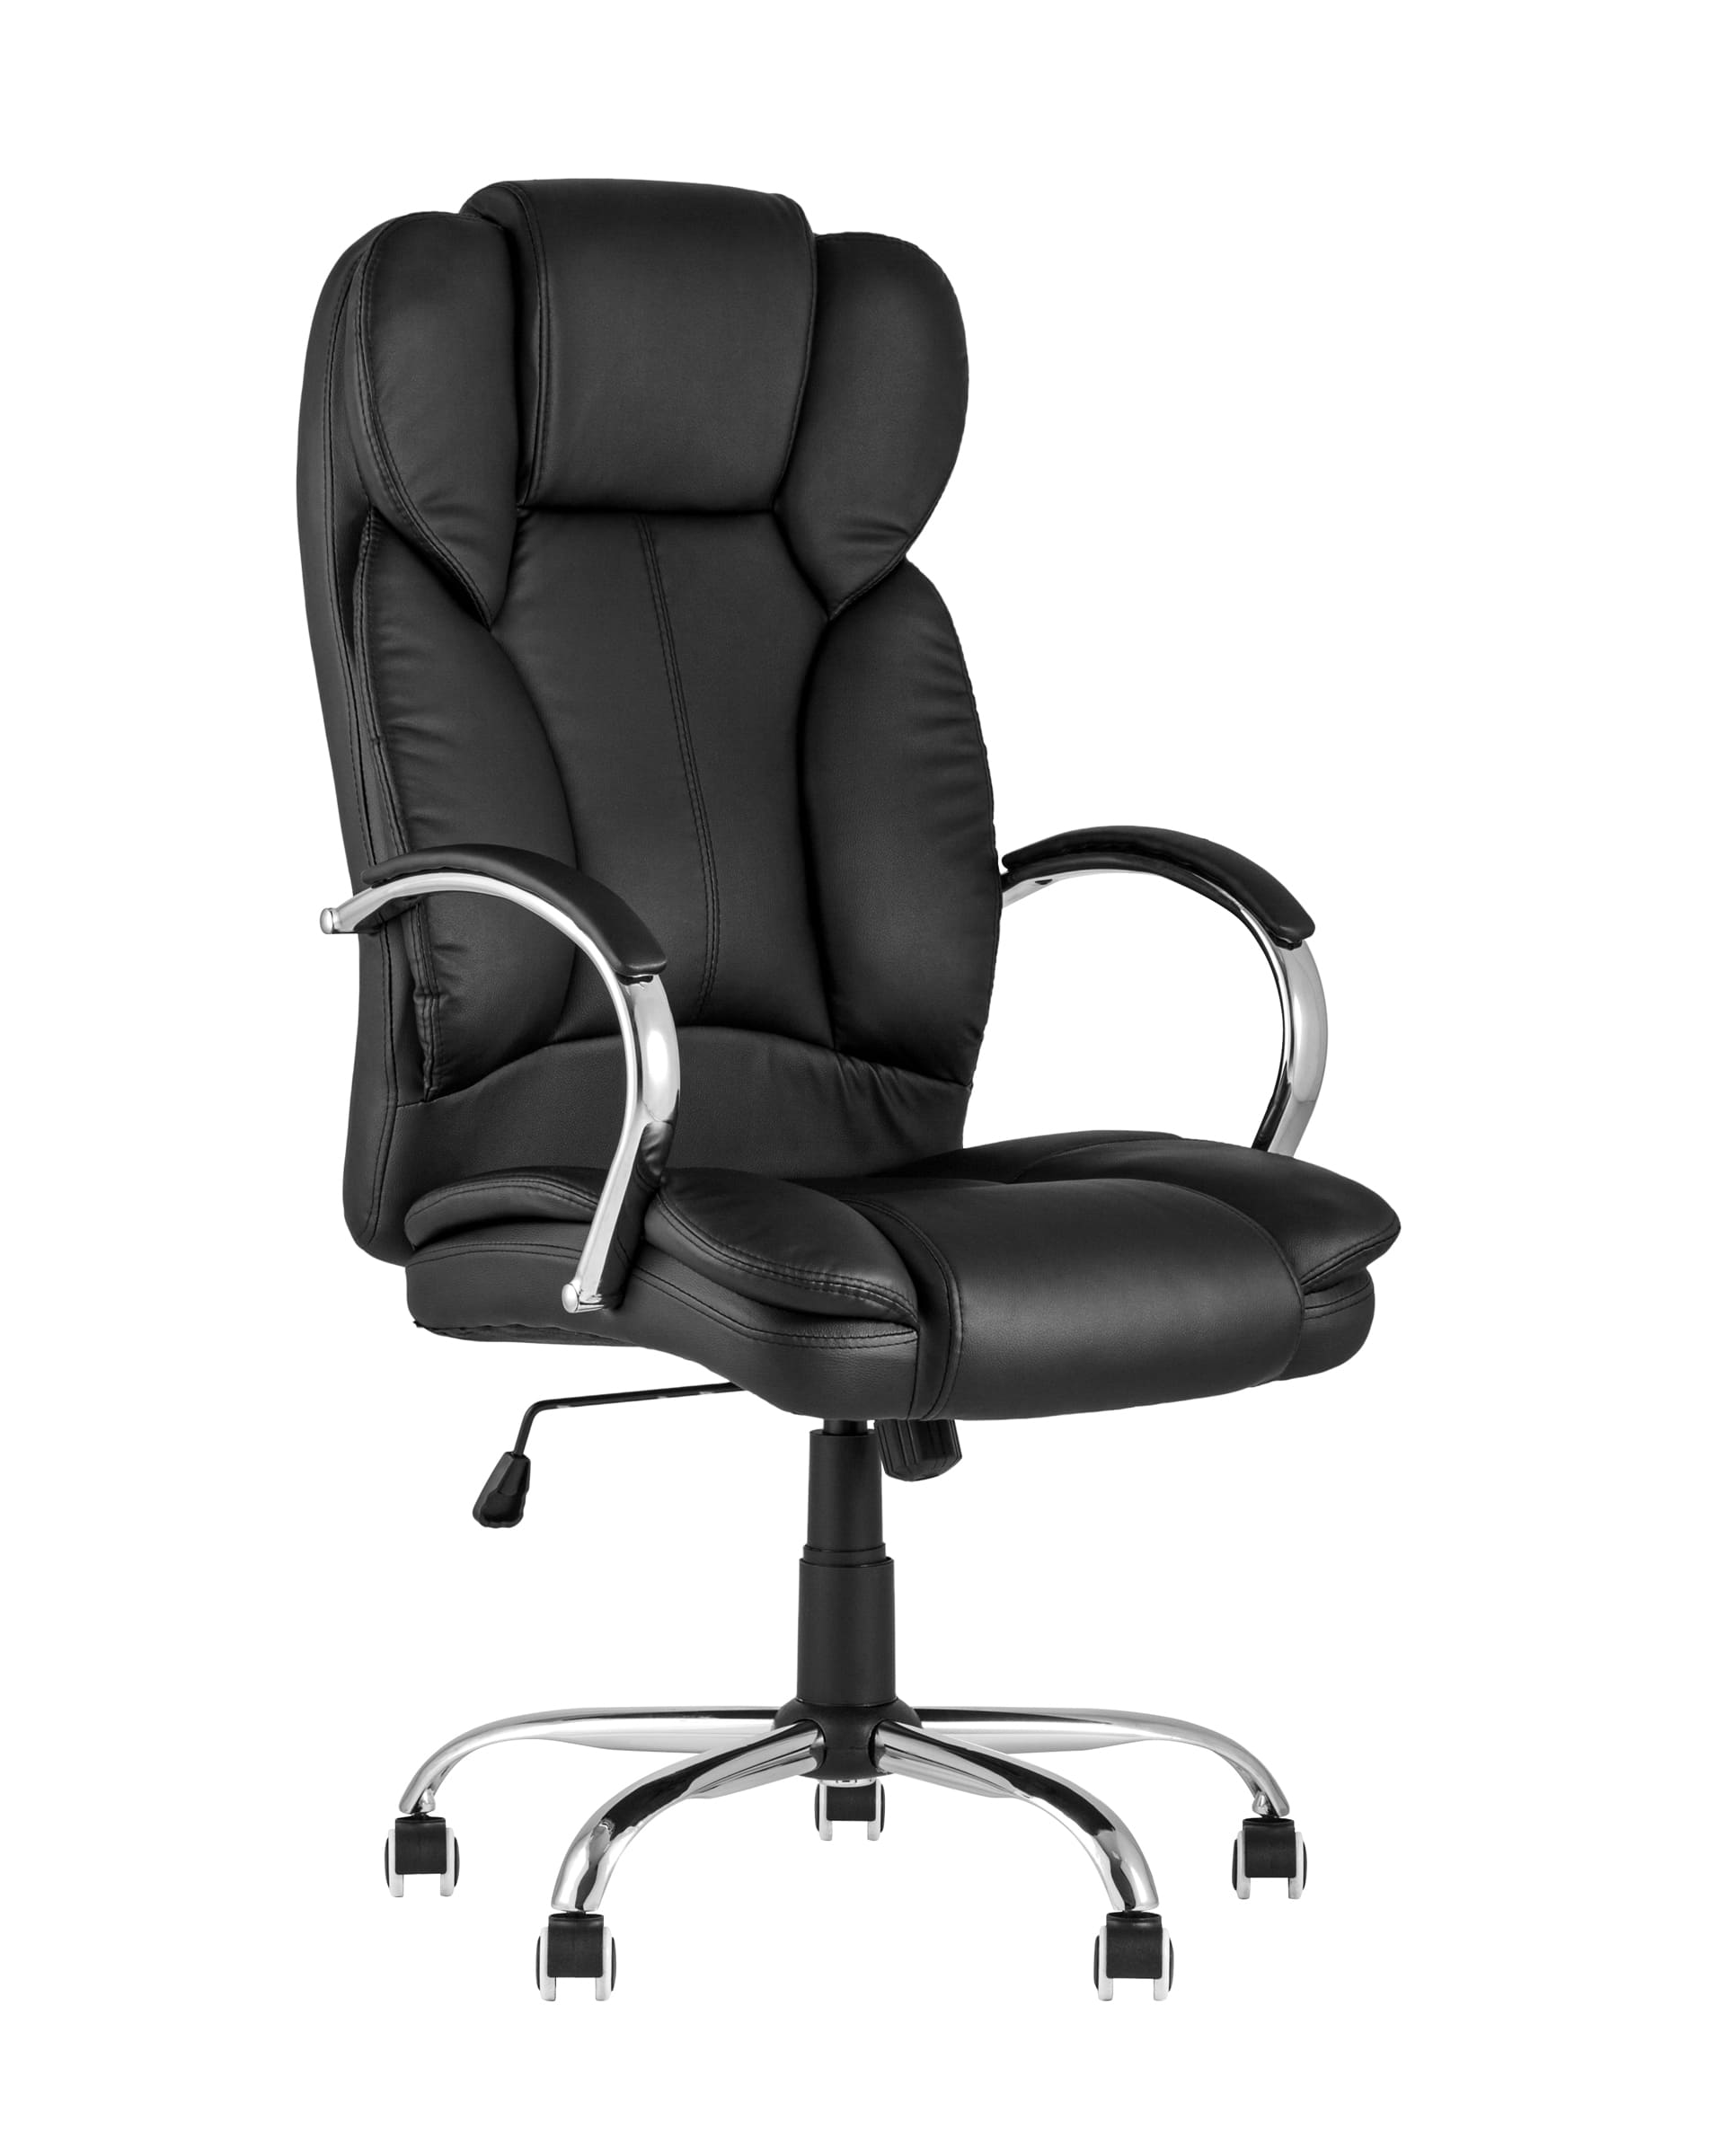 Компьютерное кресло TopChairs President офисное черное в обивке из экокожи, механизм качания и регулировки Top Gun